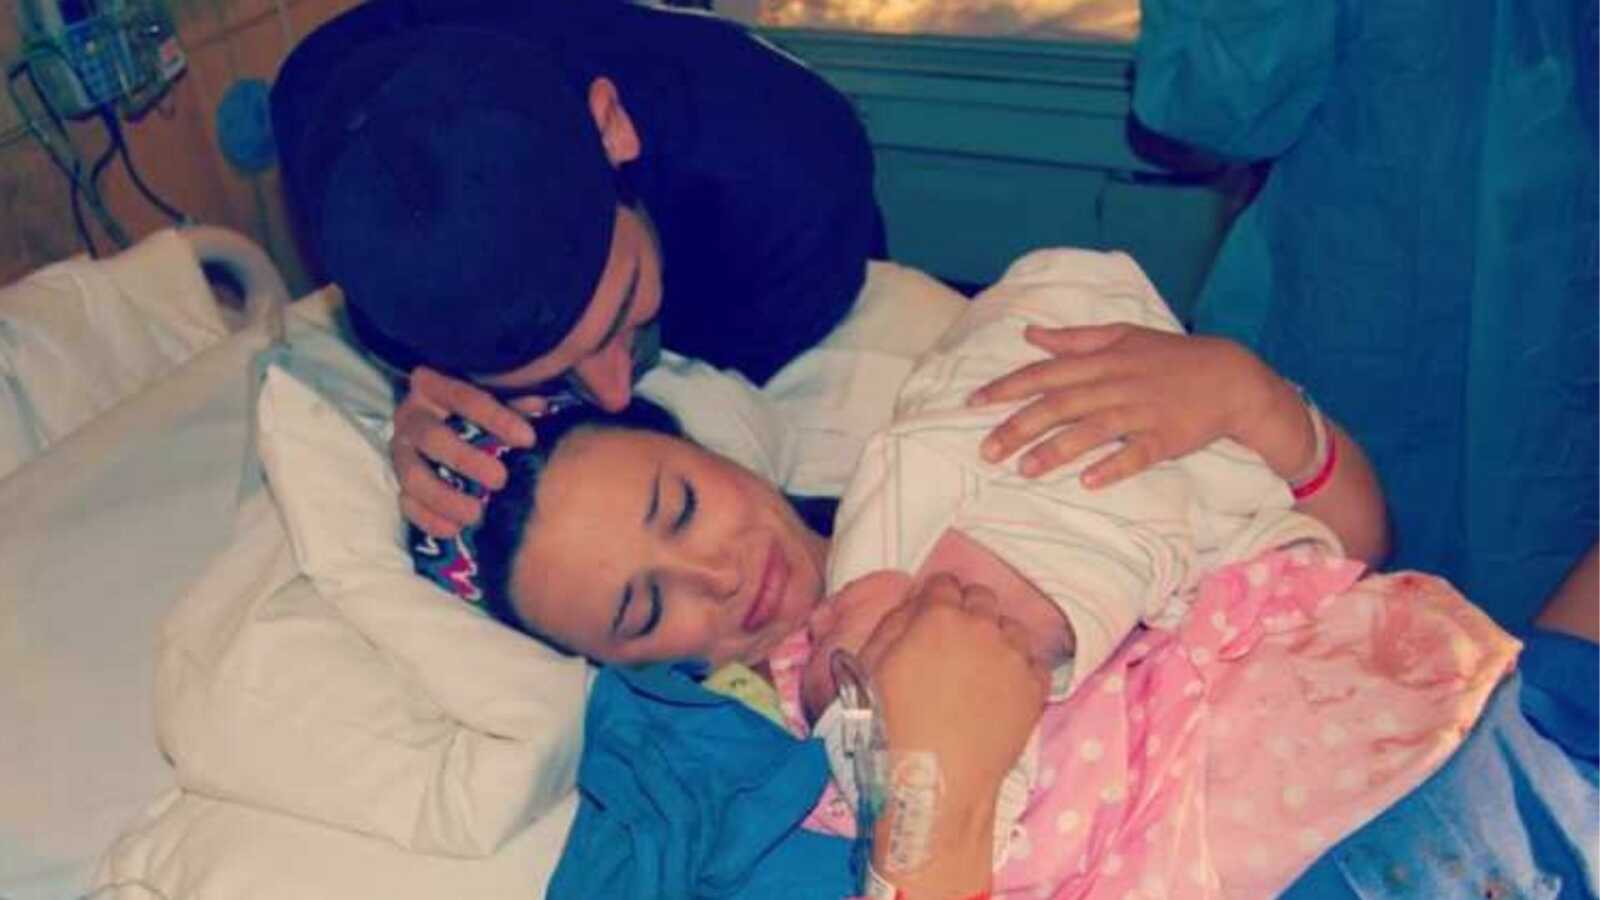 Gun shot survivor cries while holding her newborn child she just birthed